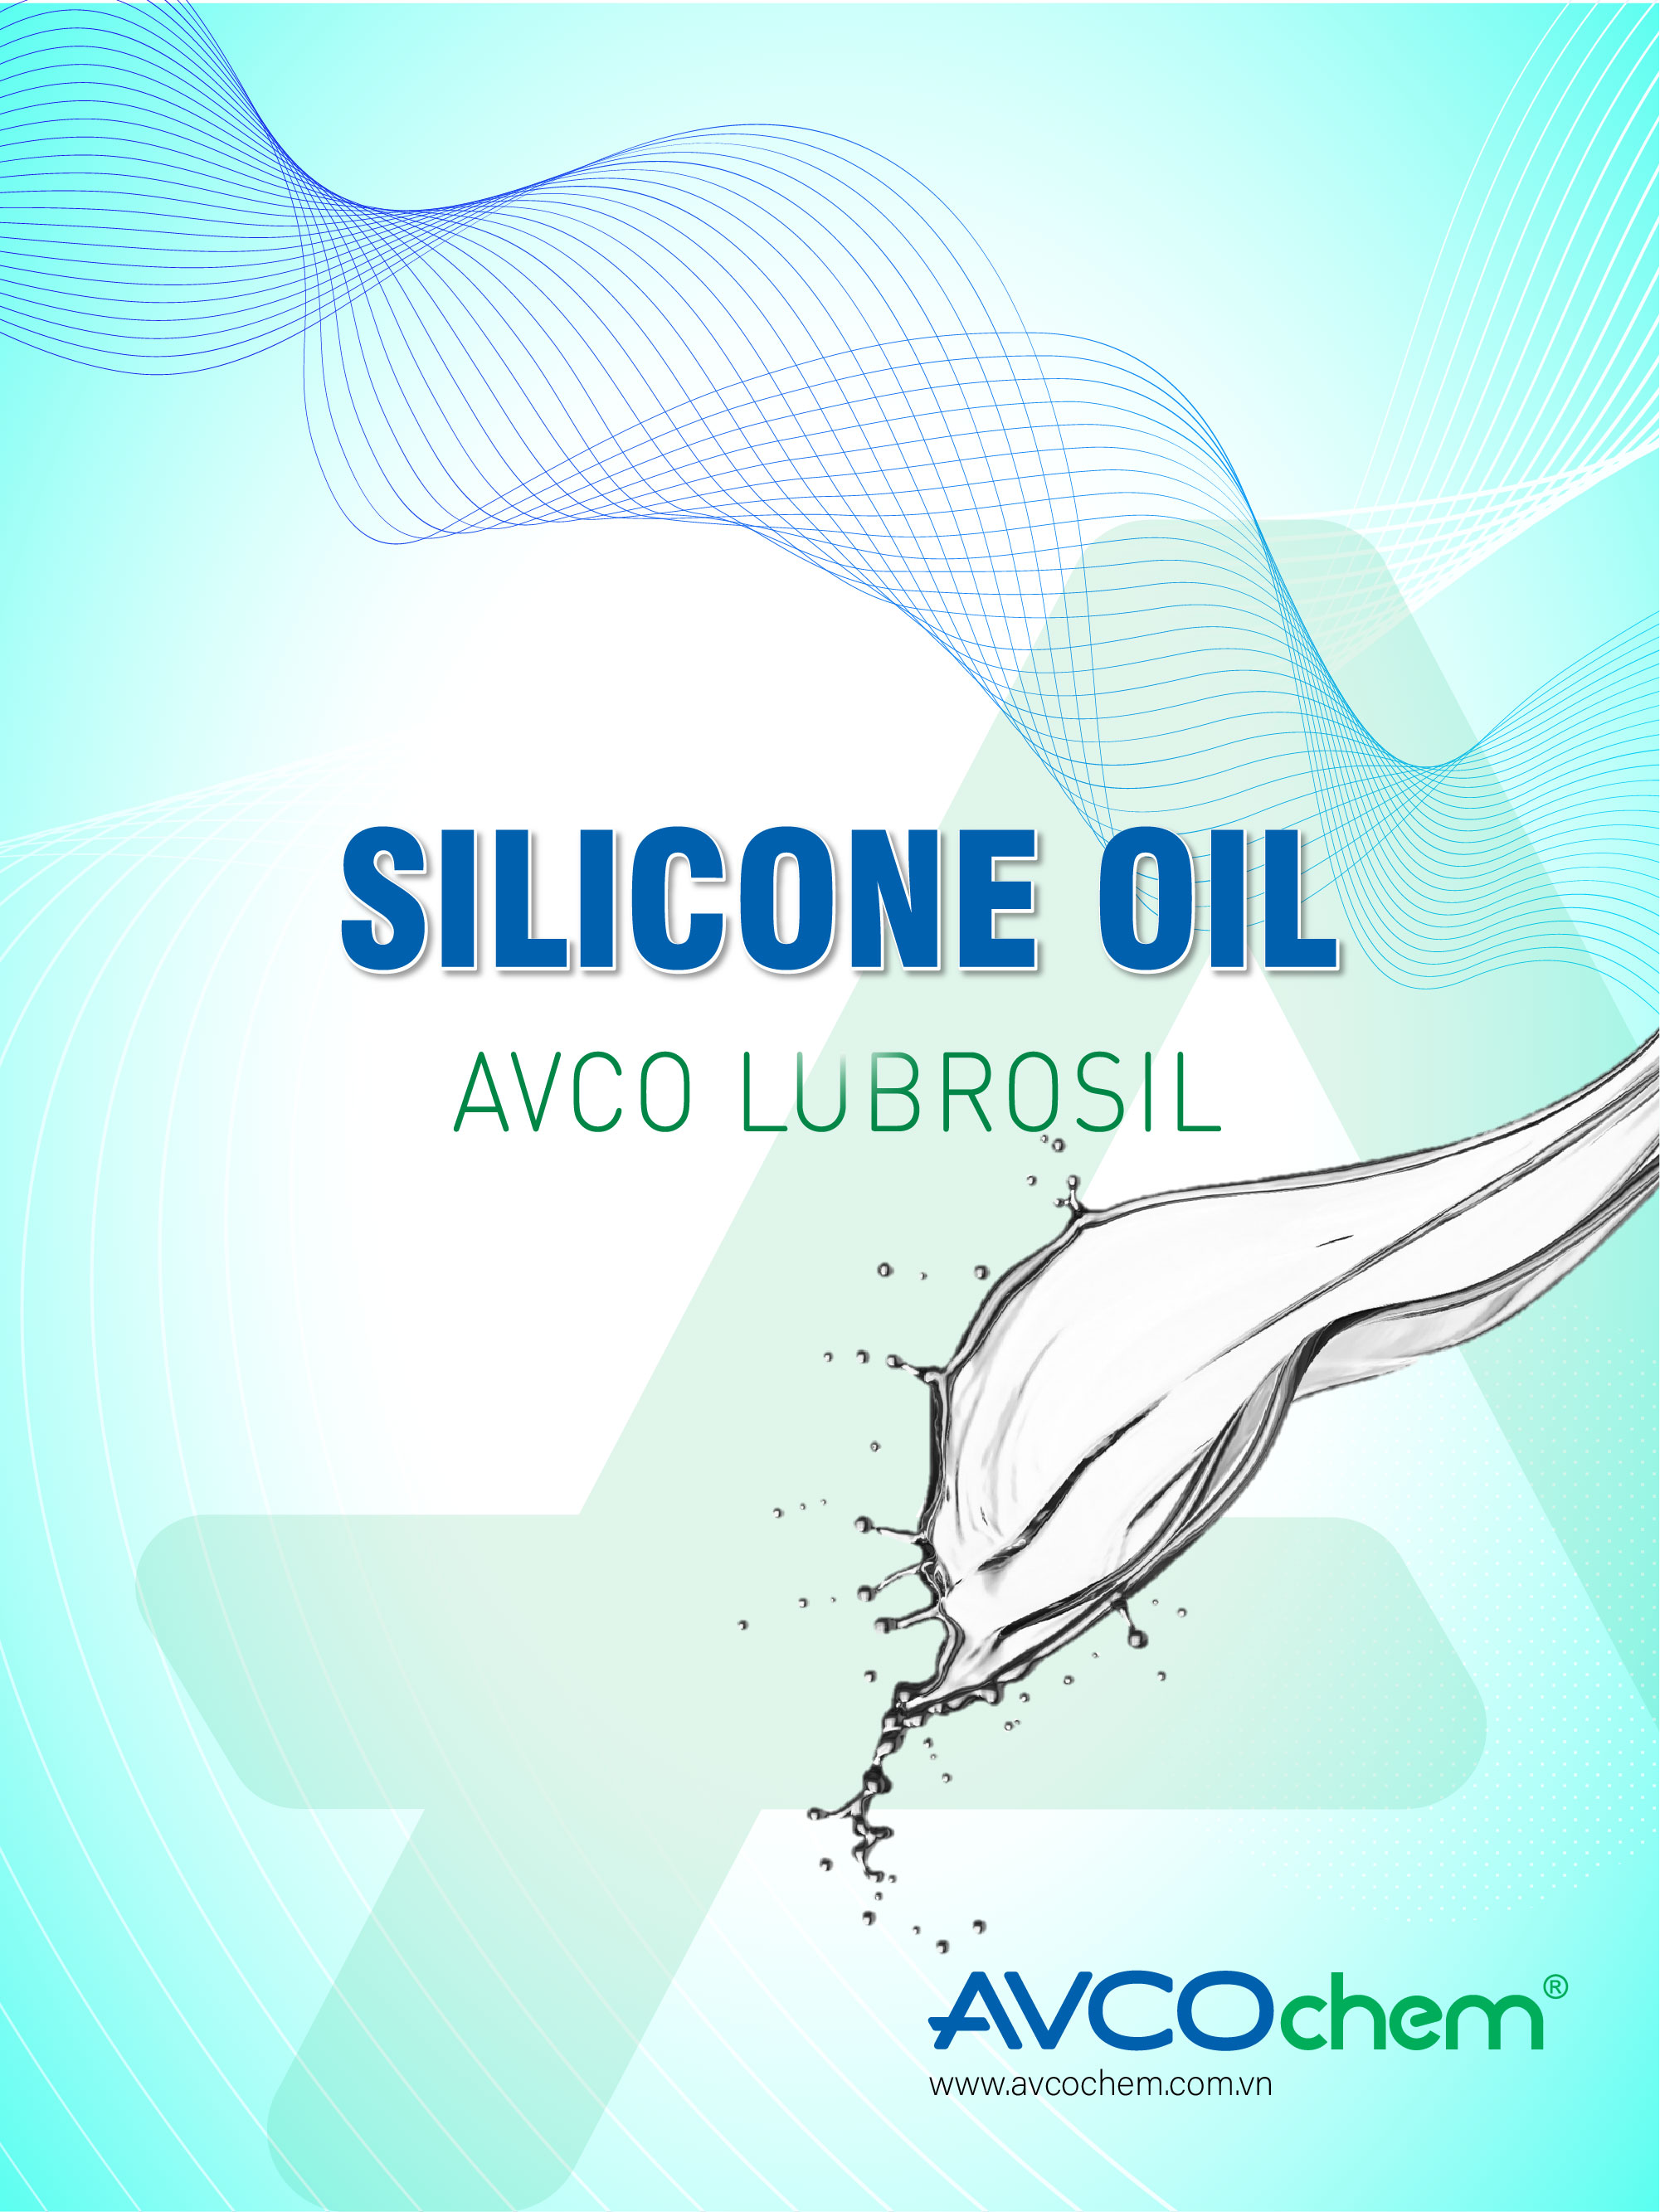 SILICONE OIL - AVCO LUBROSIL